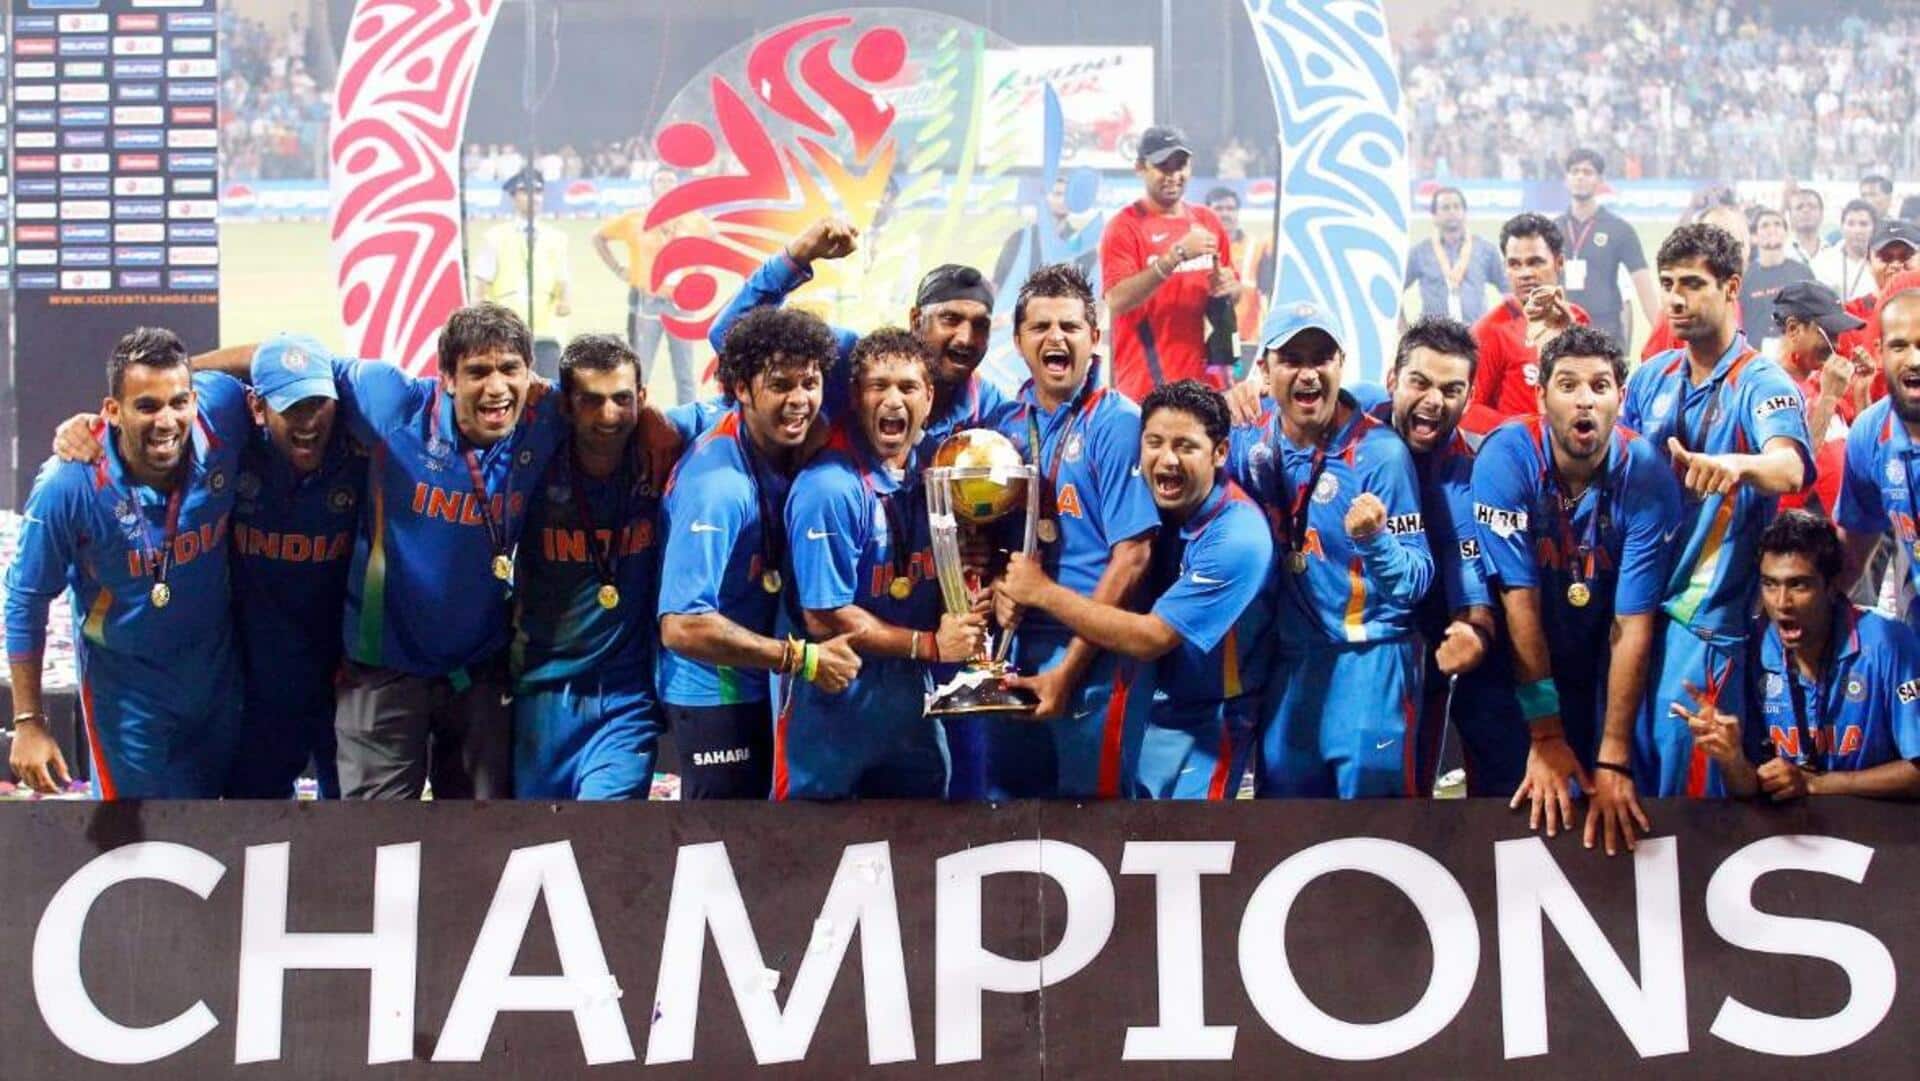 2011'ஐ ரிப்பீட் பண்ணும் 2023! ஒருநாள் உலகக்கோப்பையை இந்தியா வெல்வது உறுதி?